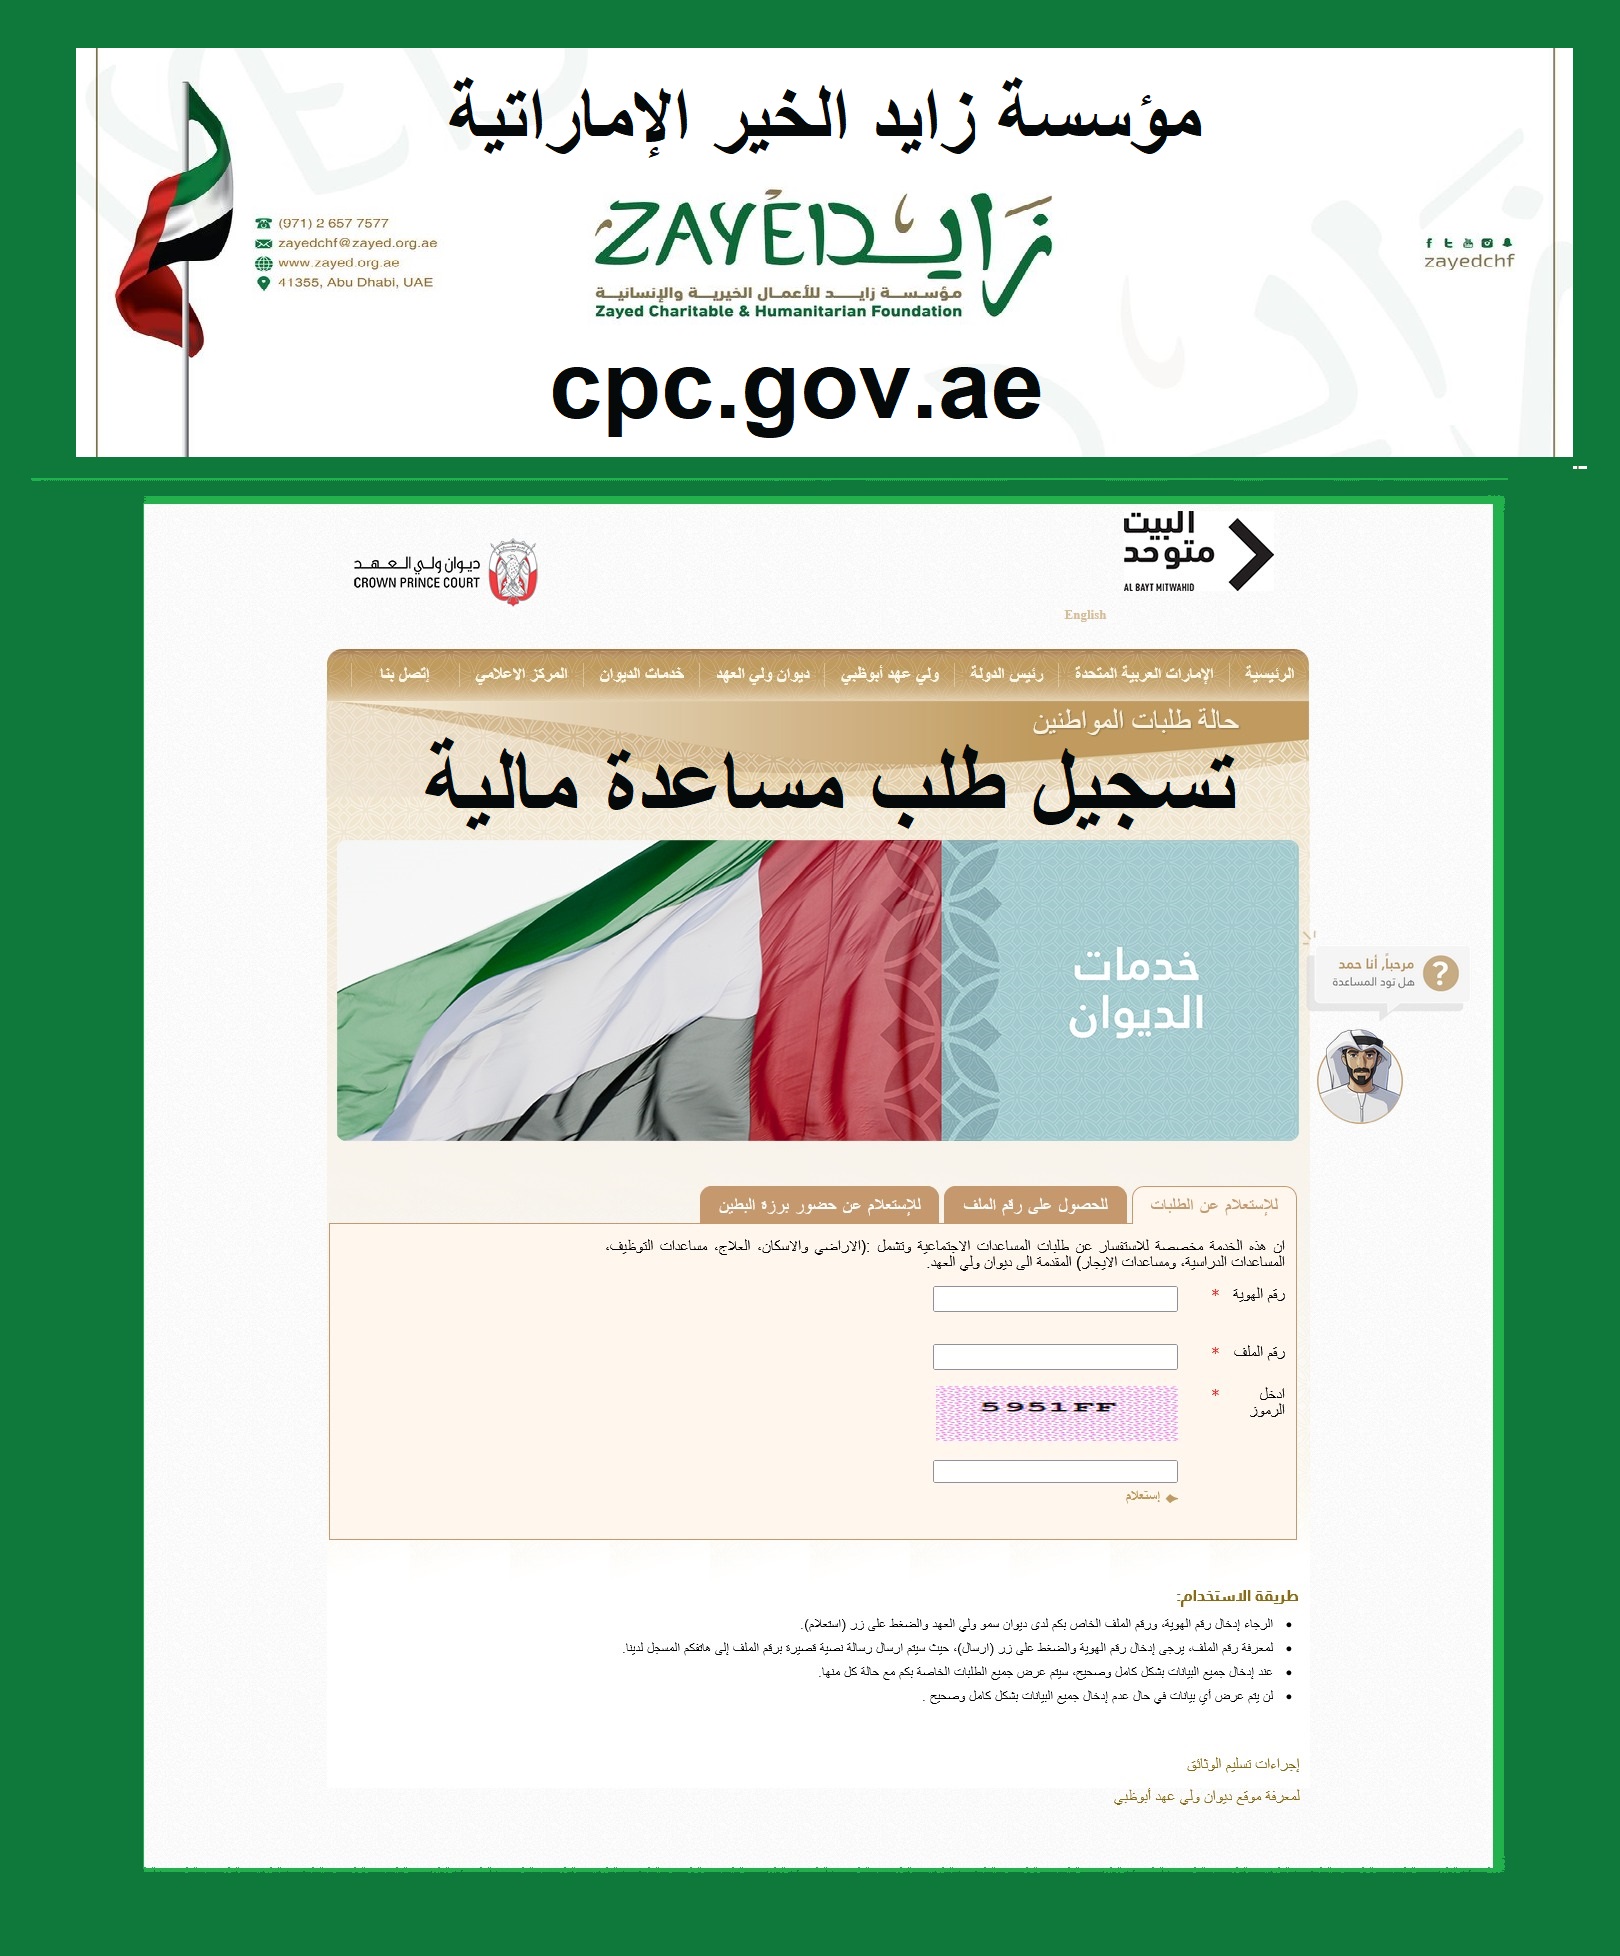 مؤسسة زايد الخير الإماراتية cpc.gov.ae تسجيل طلب مساعدة من “أشهر الجمعيات الخيرية”